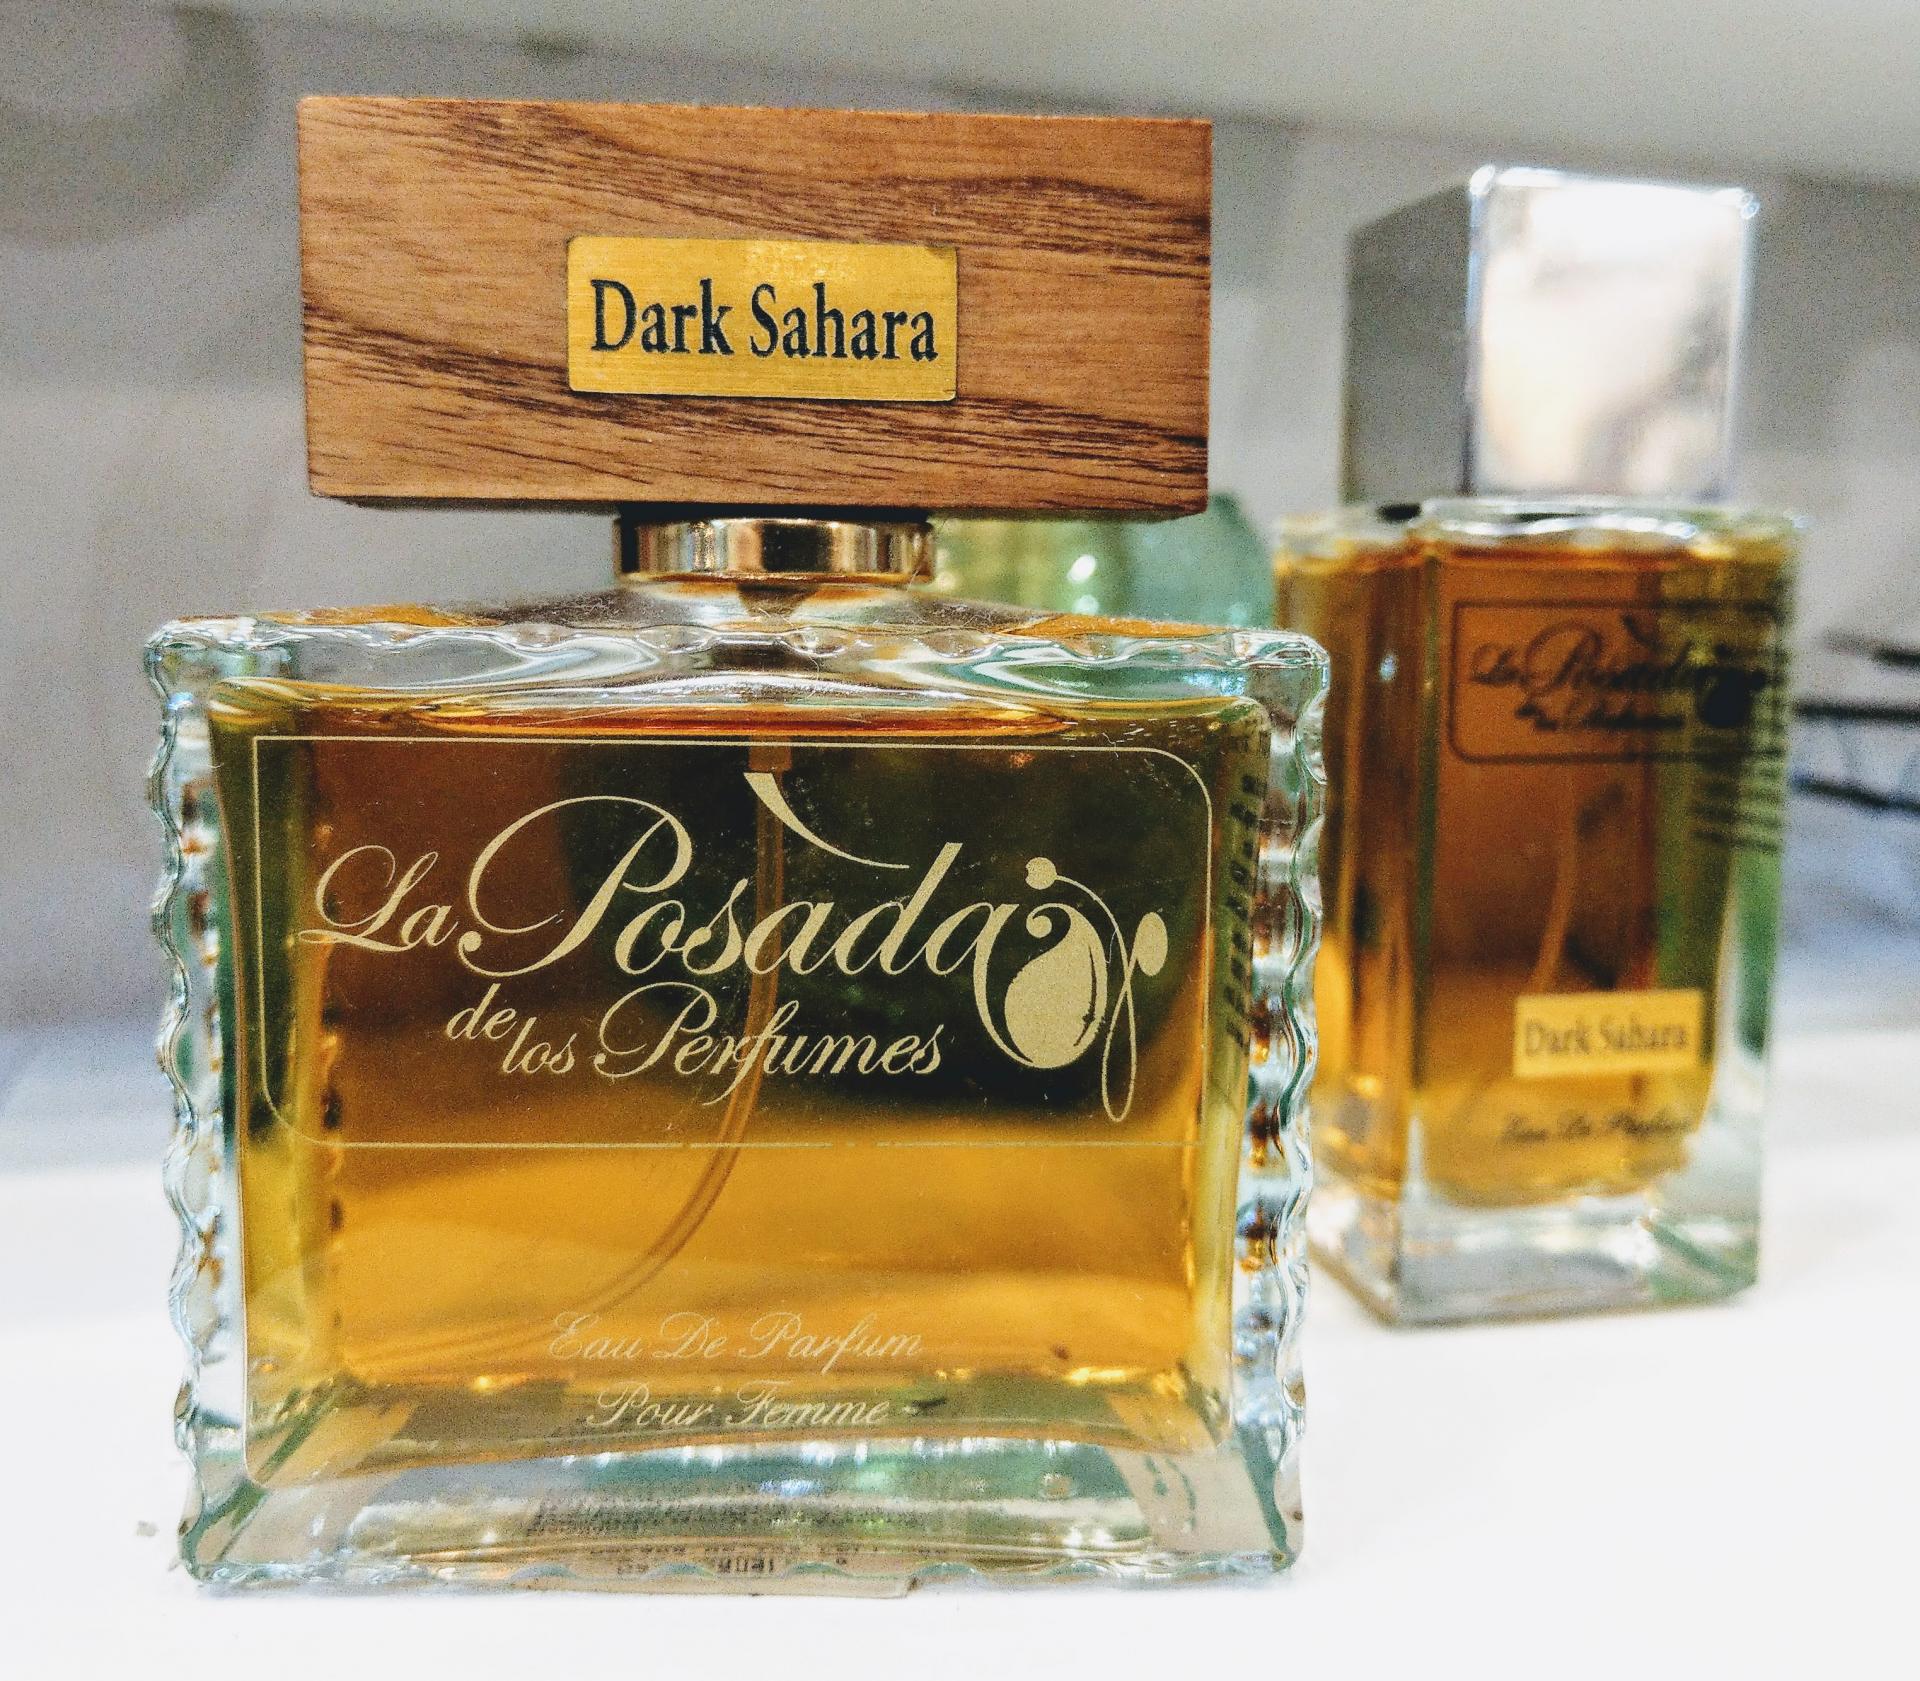 Dark Sahara Eau de Parfum